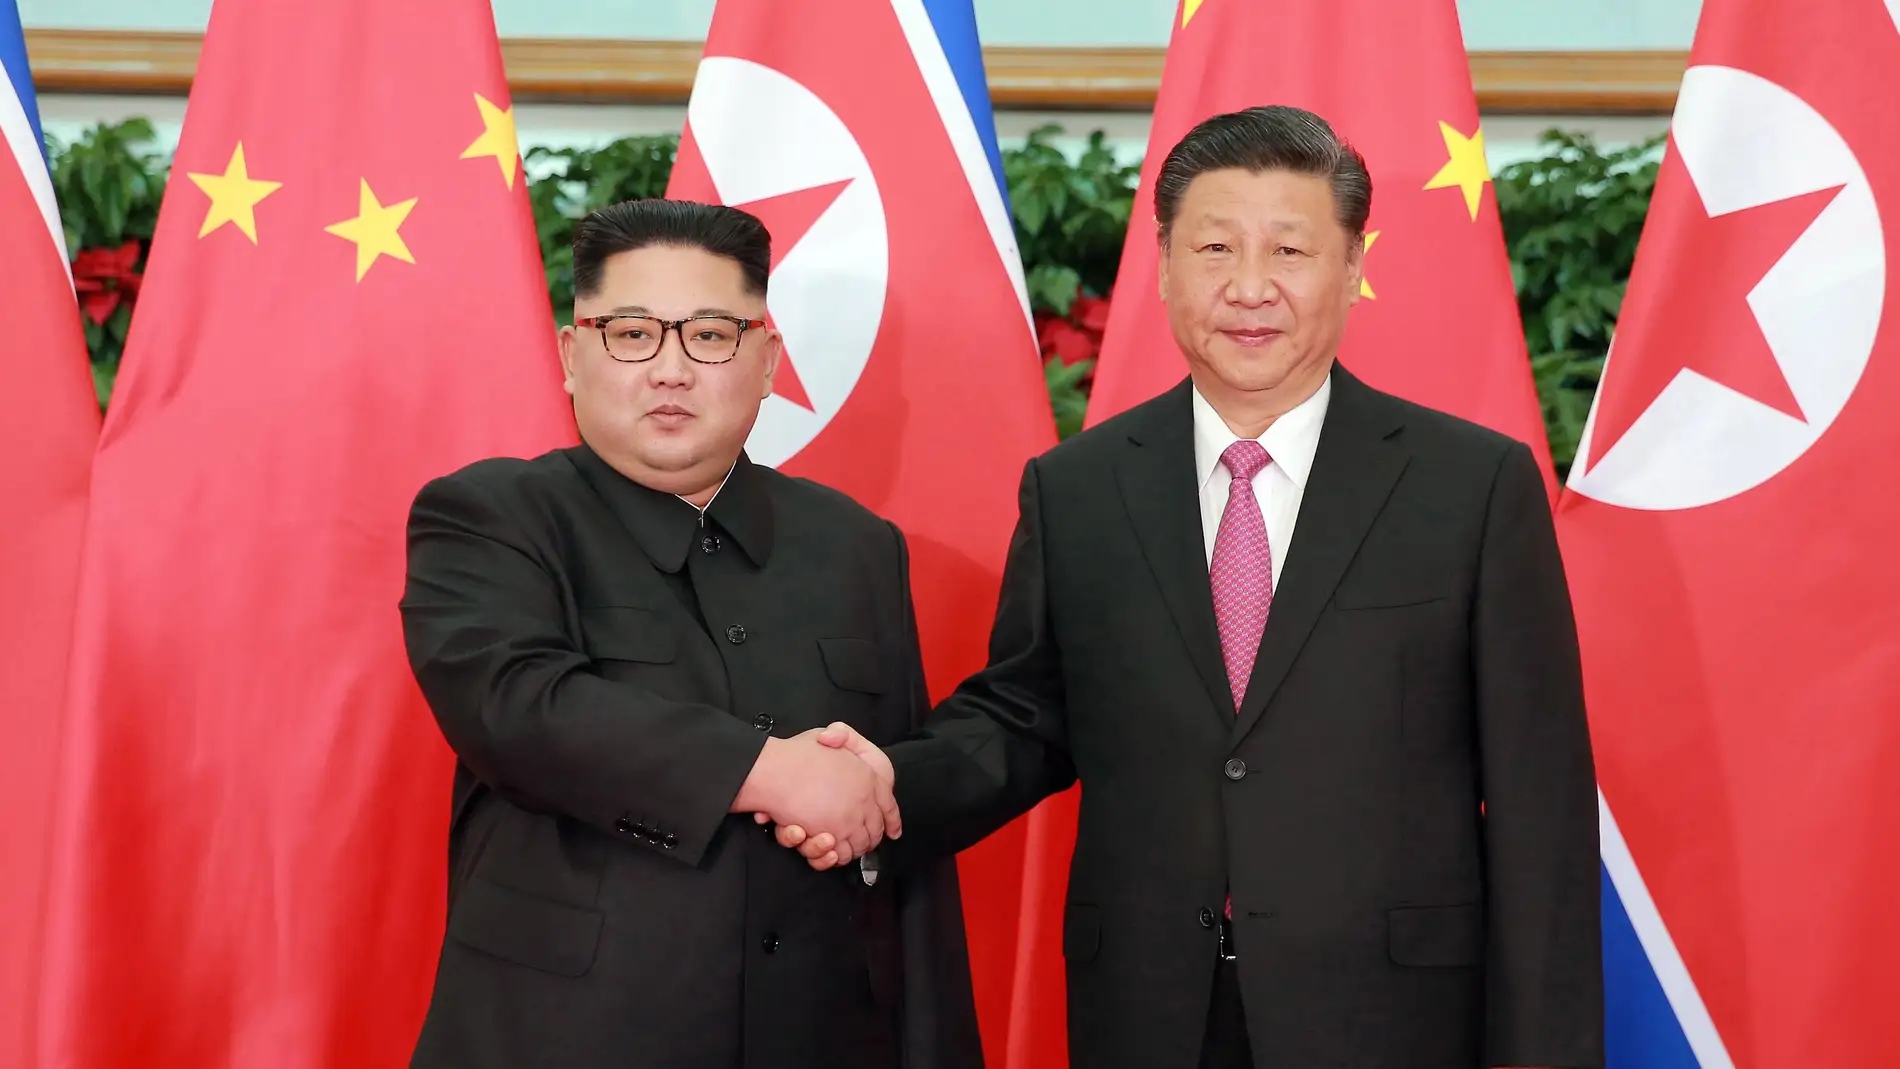 El líder norcoreano Kim Jong-un y el presidente chino Xi Jinping, en una fotografía de archivo